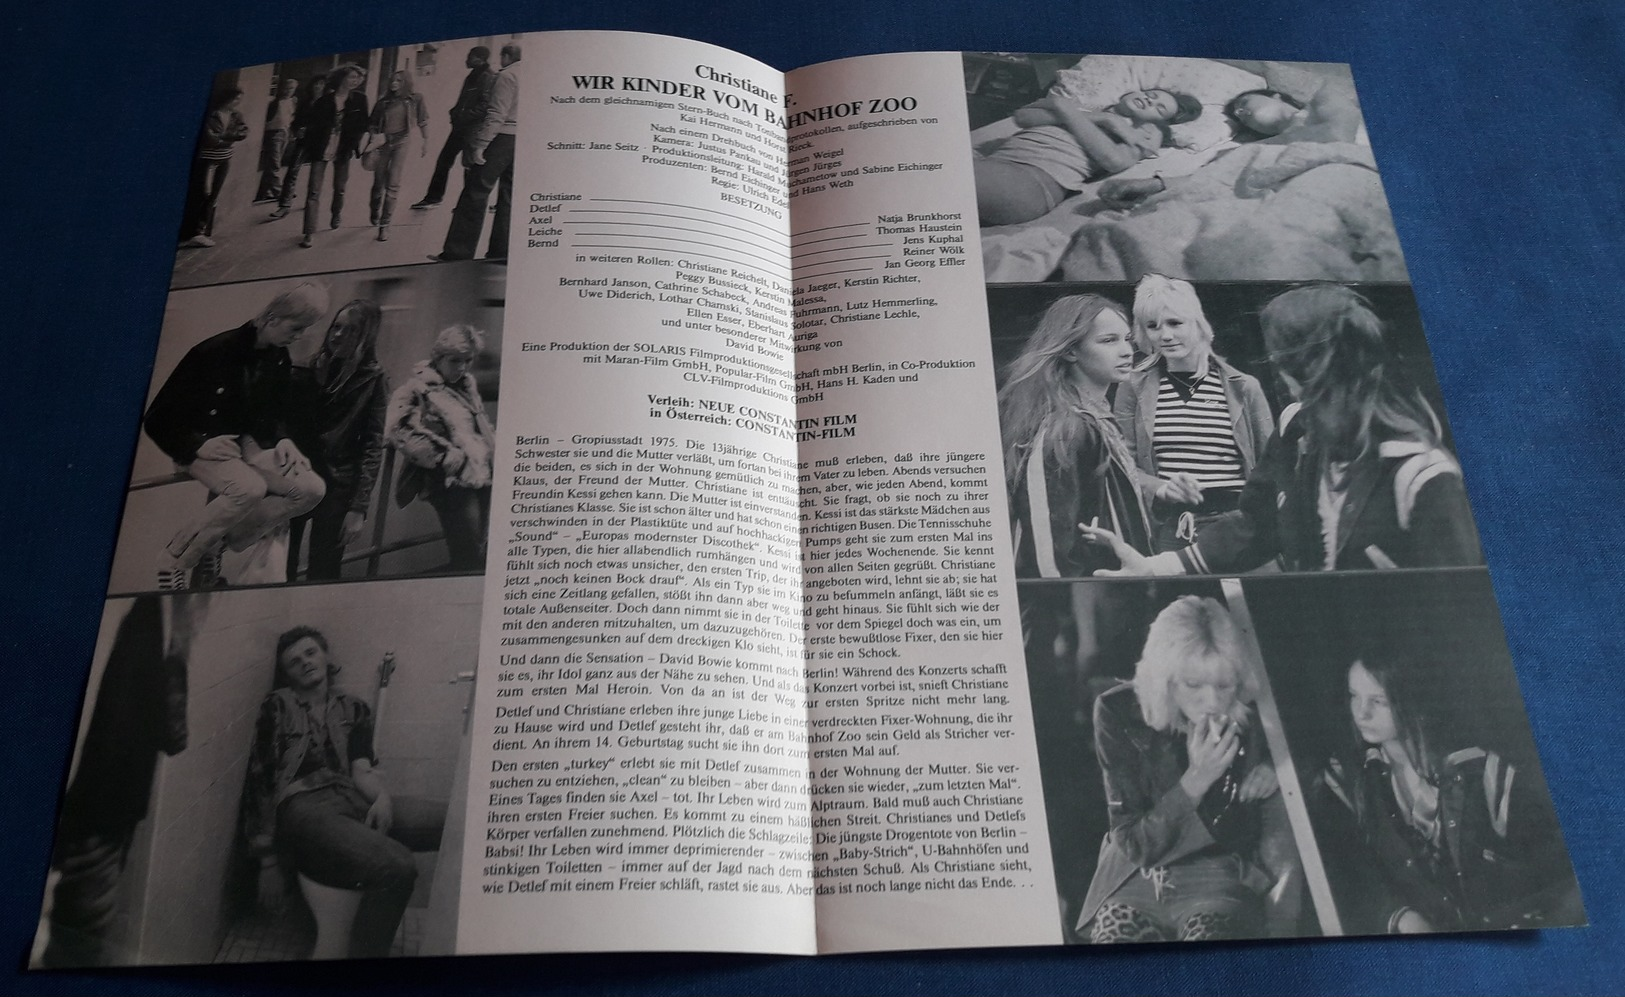 Natja Brunkhorst, Thomas Haustein > "Christiane  F. - Wir Kinder Vom Bahnhof Zoo" > Altes NFP-Filmprogramm '1981 (fp112) - Zeitschriften